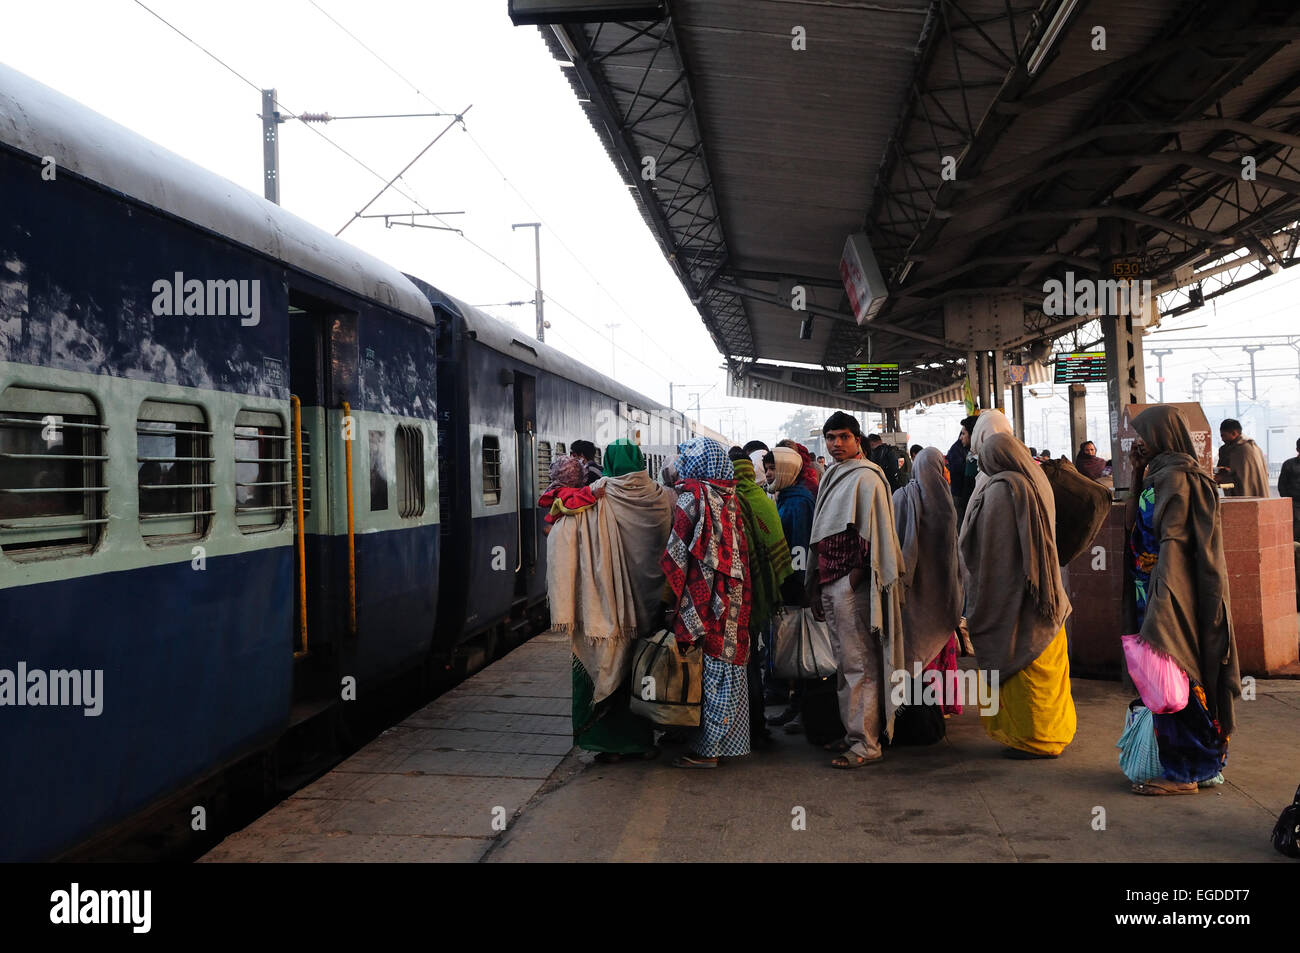 Les Indiens en attente sur la plate-forme d'un train à la gare de New Delhi Inde Banque D'Images